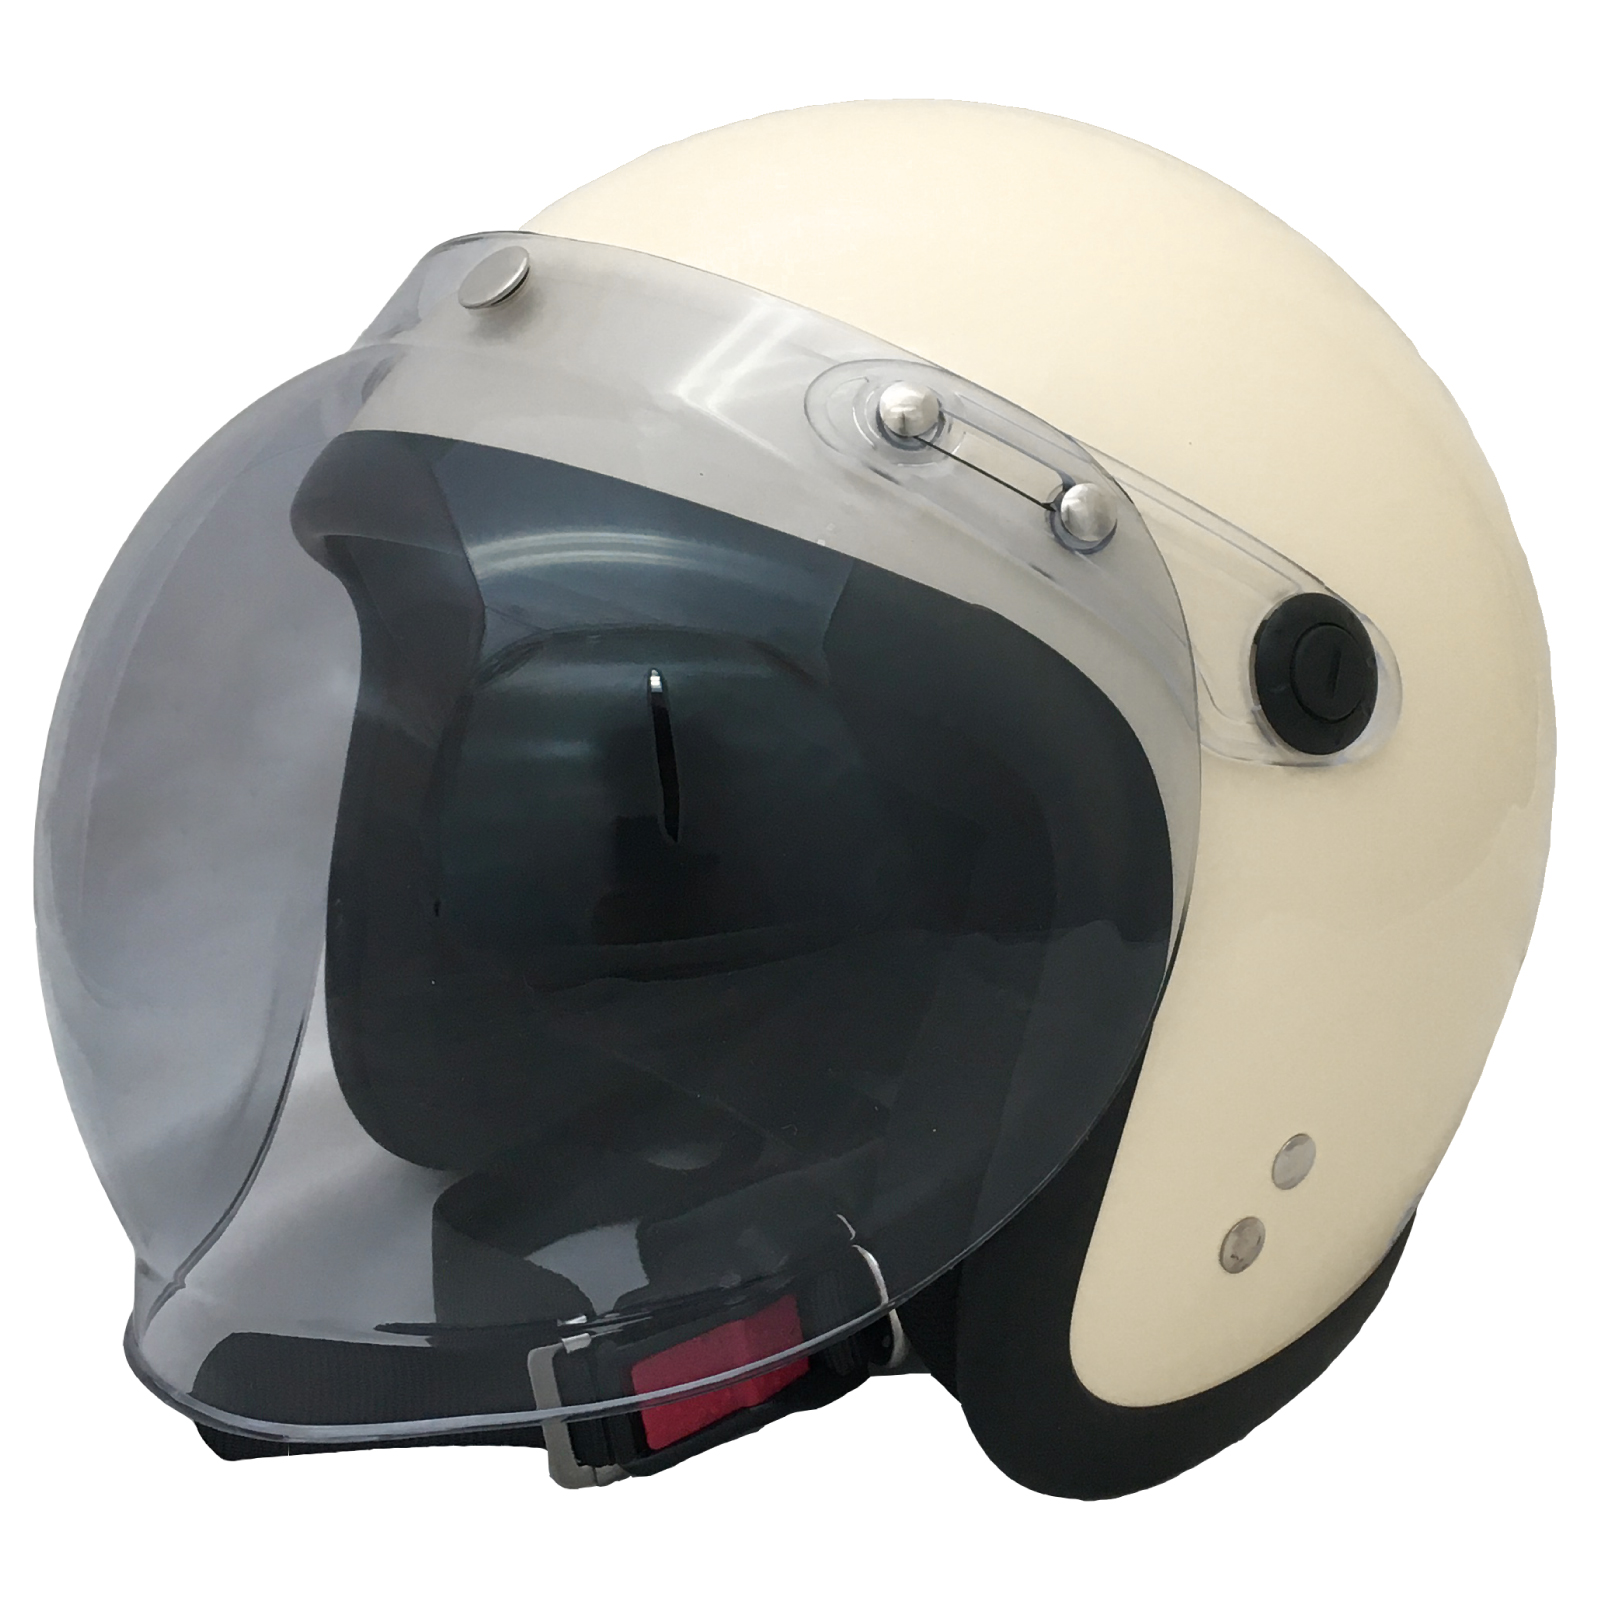 ジェット ヘルメット フリーサイズ 全排気量対応 レディース メンズ シールド付き UV加工 Power7 バイクヘルメット